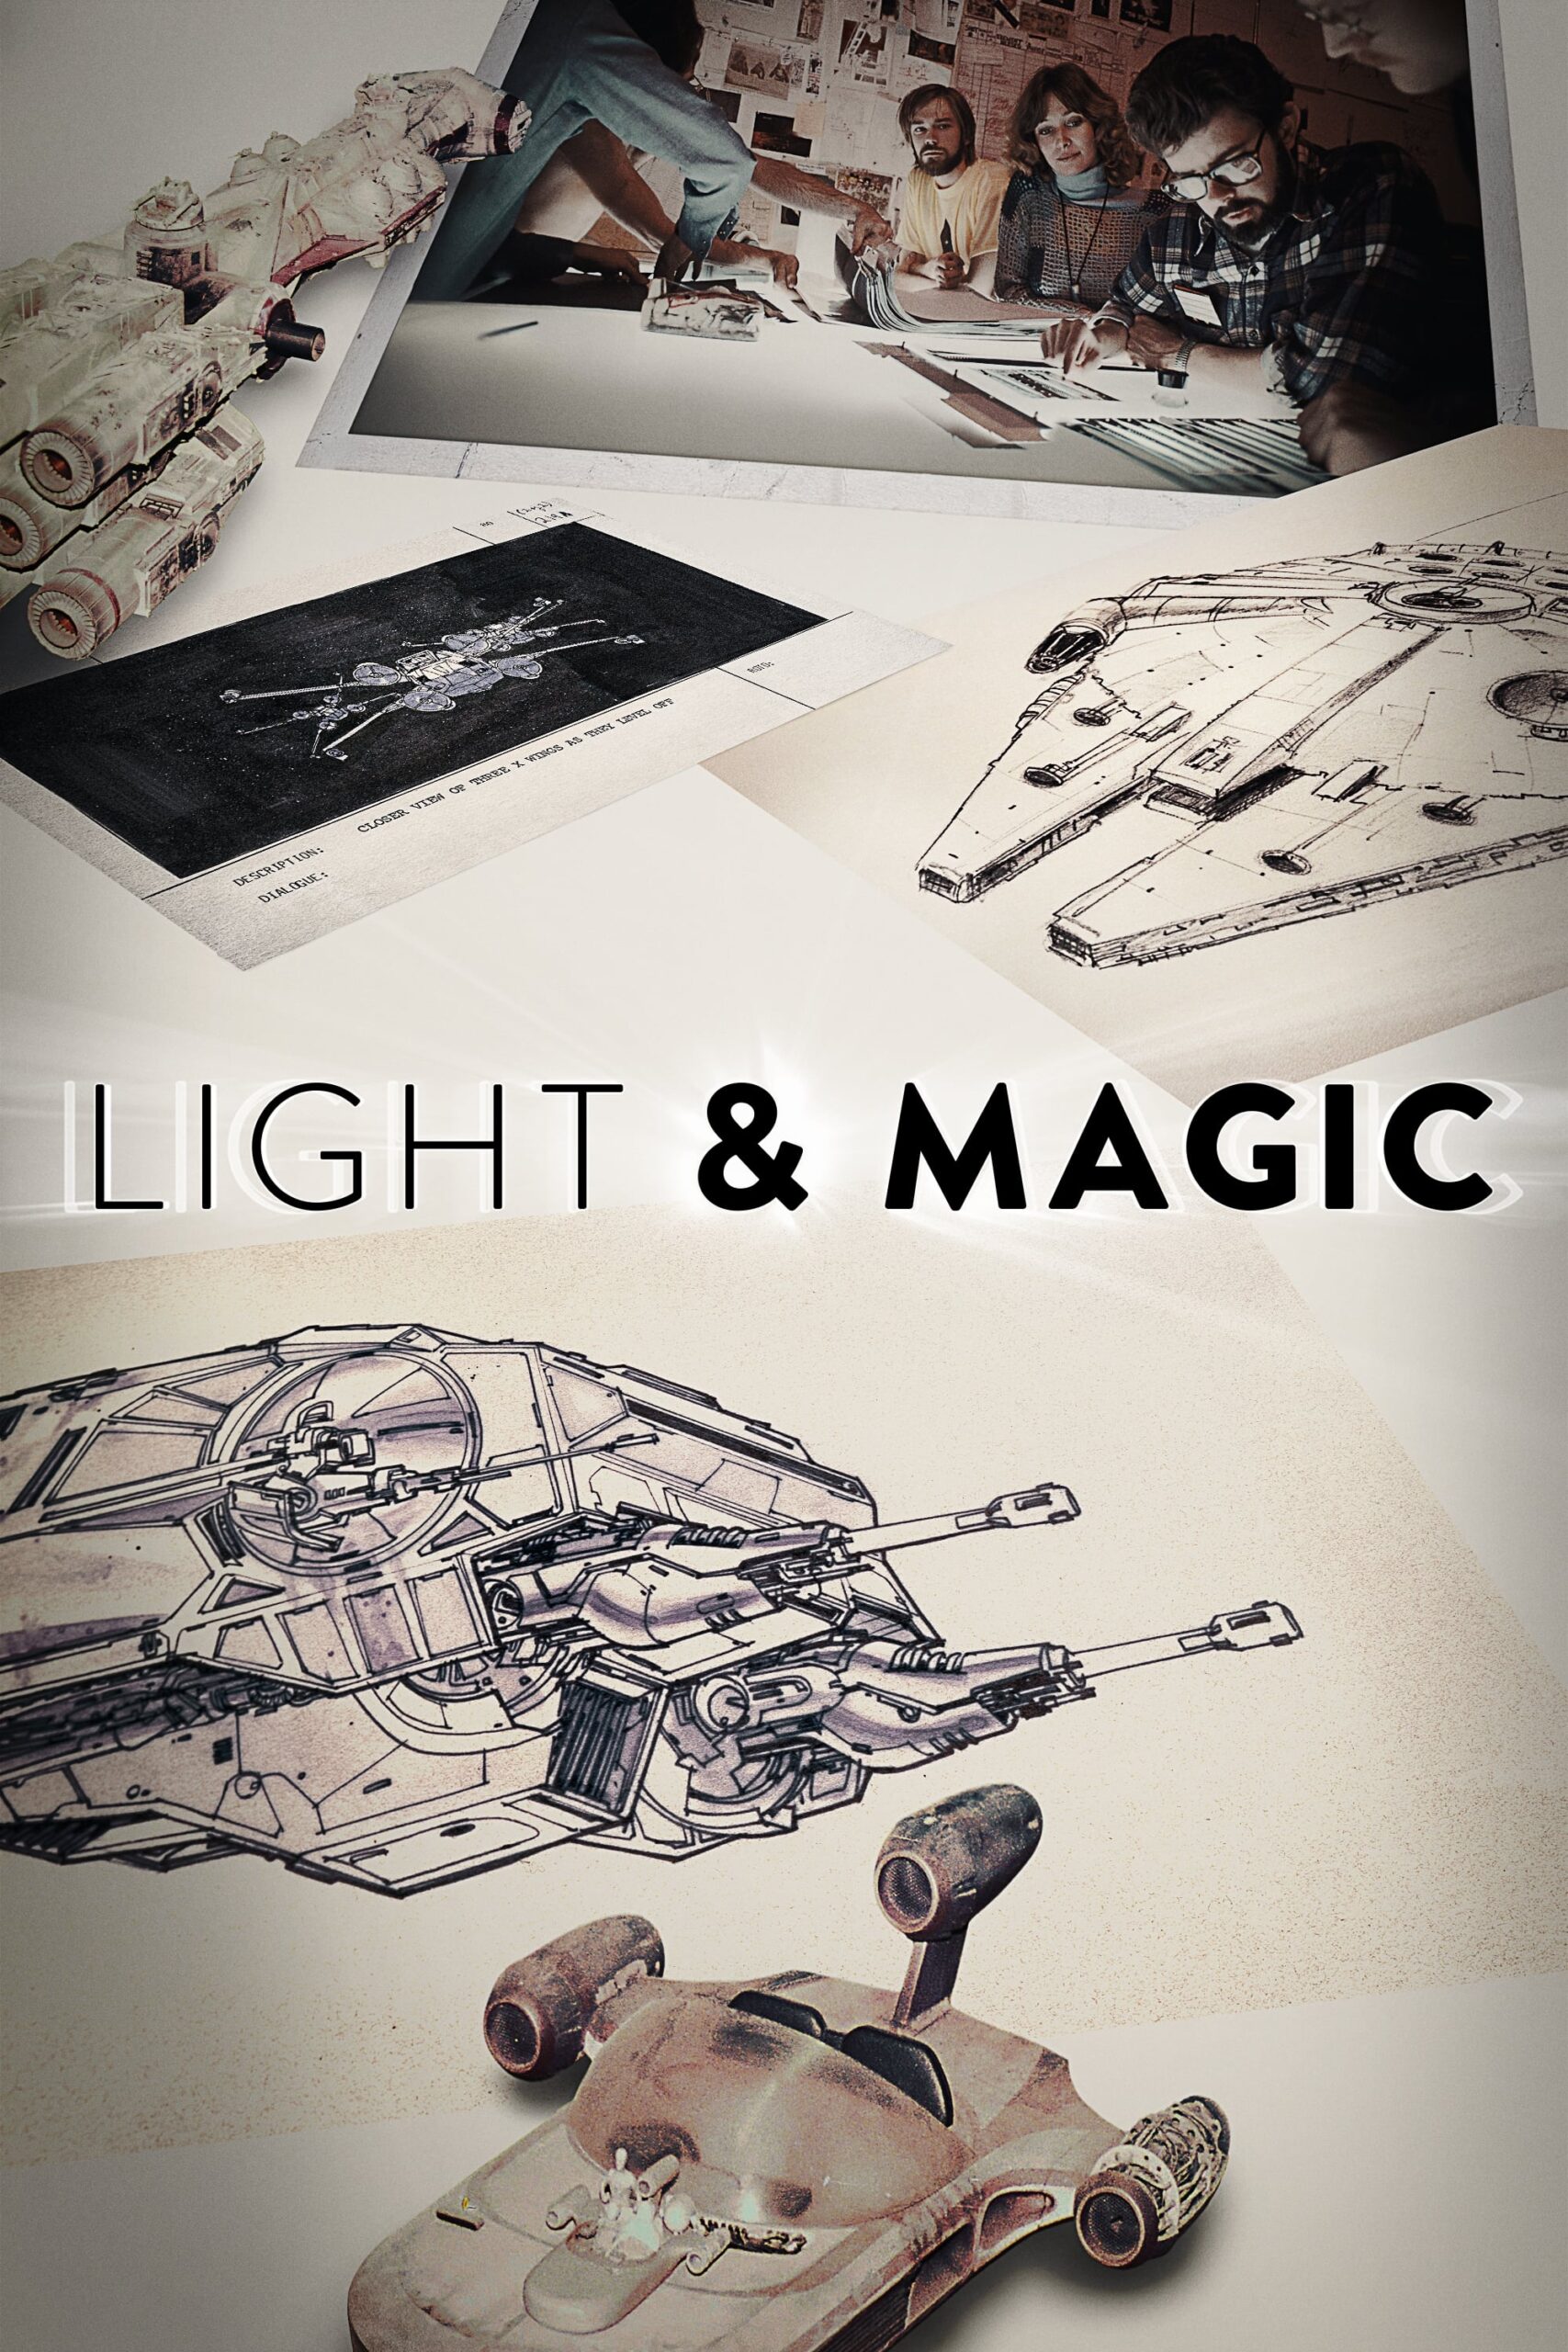 لایت اند مجیک (Light & Magic)